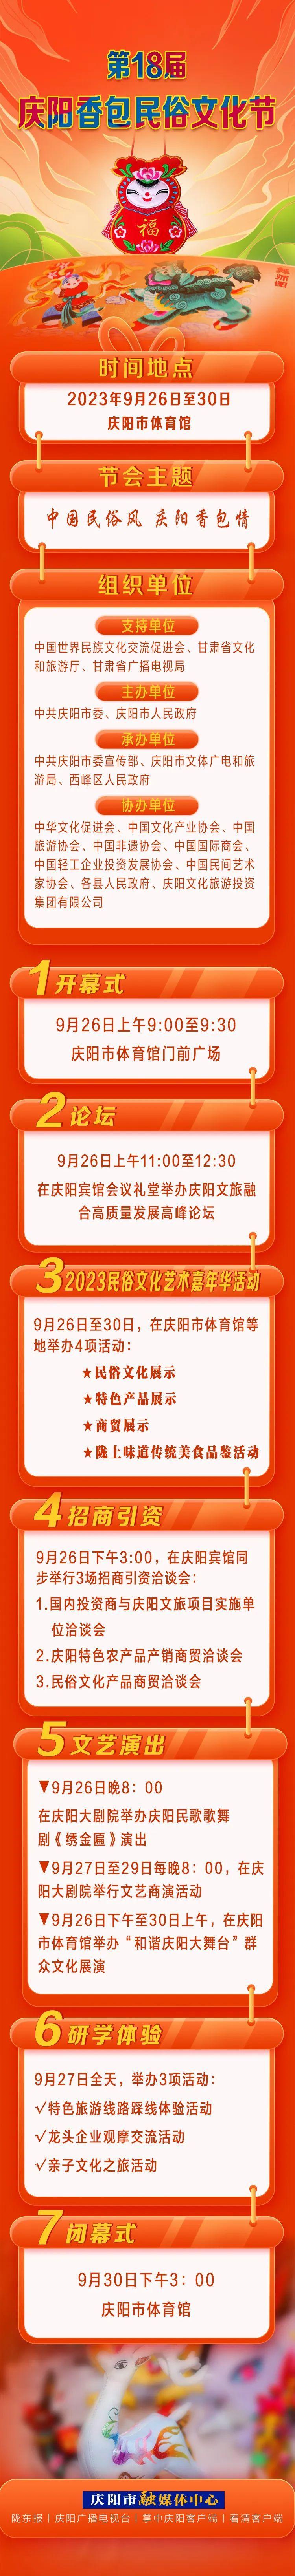 第18届庆阳香包民俗文化节将于9月26日至30日举行